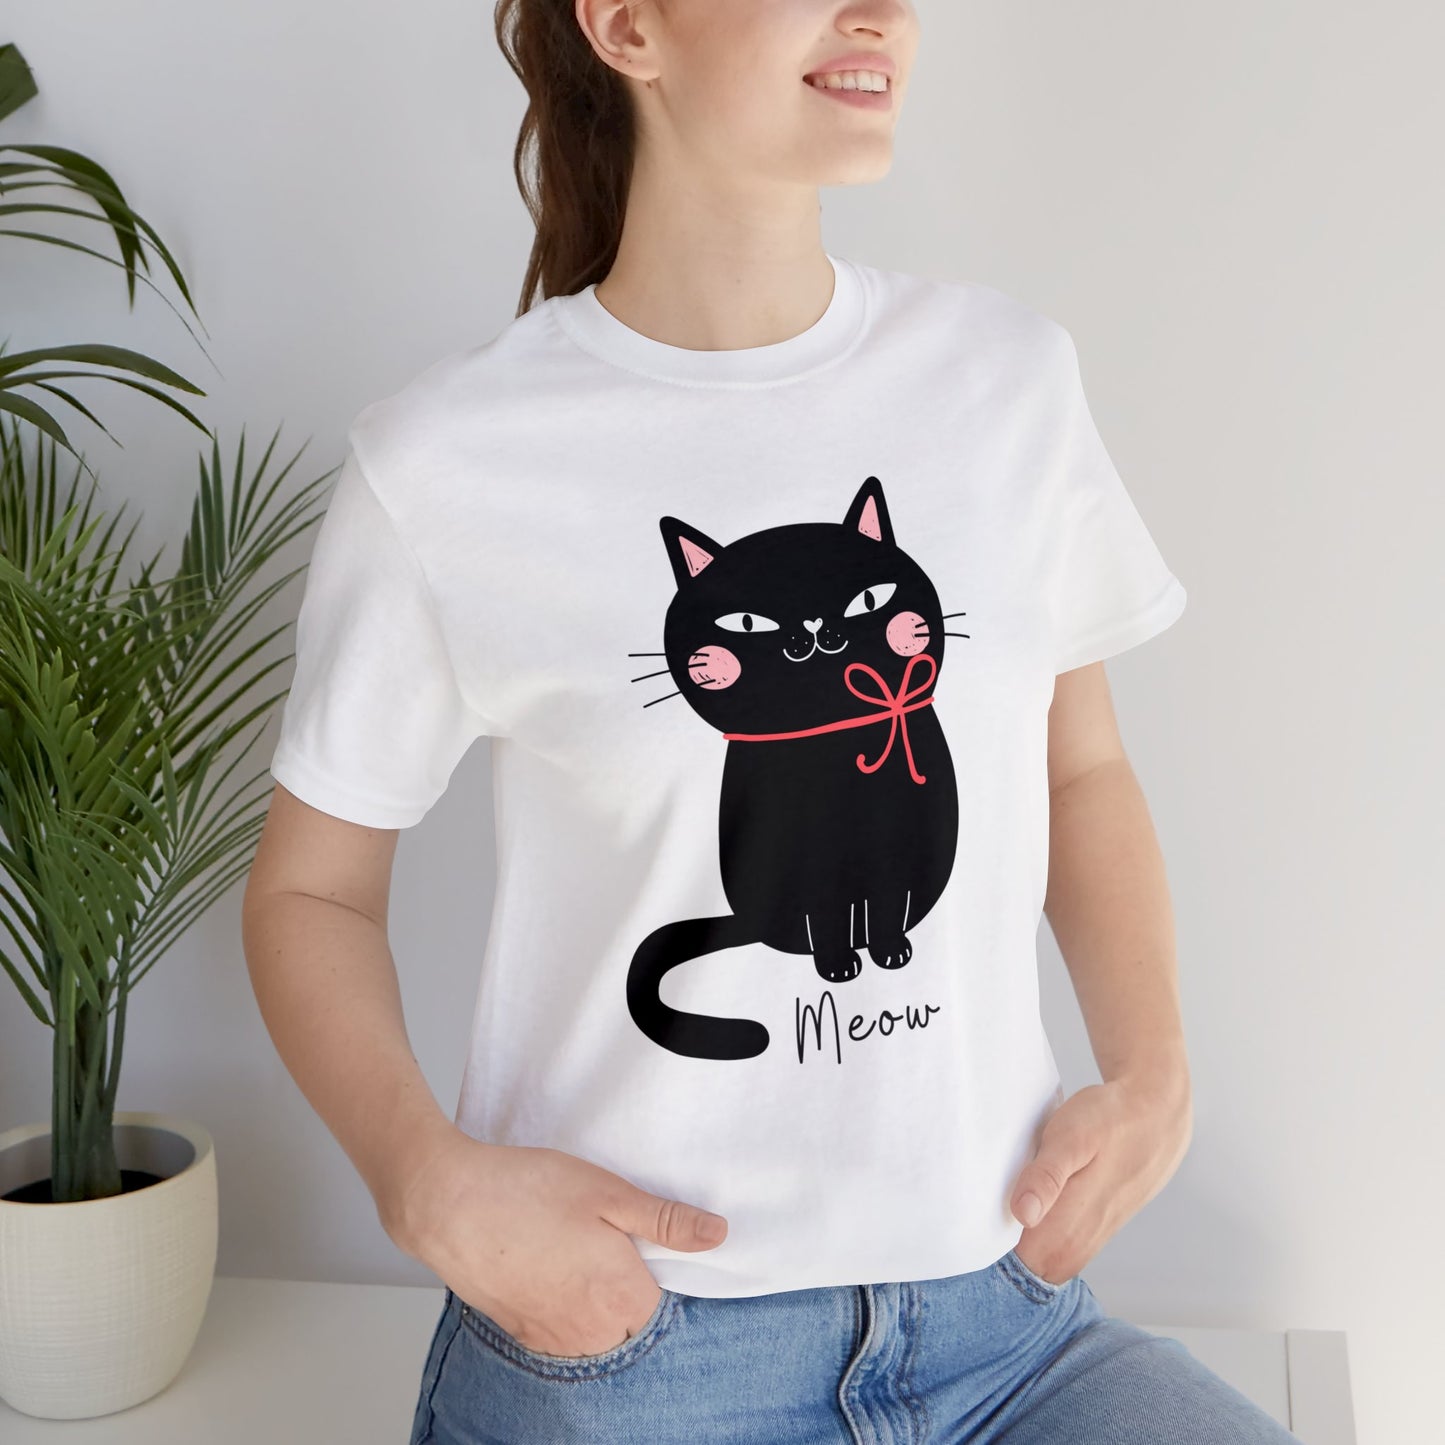 Cute Black cat Christmas Shirt, Kawaii cat xmas shirt, Funny cat Christmas T-shirt, cat cozy tee shirt, cat lover gift, black cat mom gift